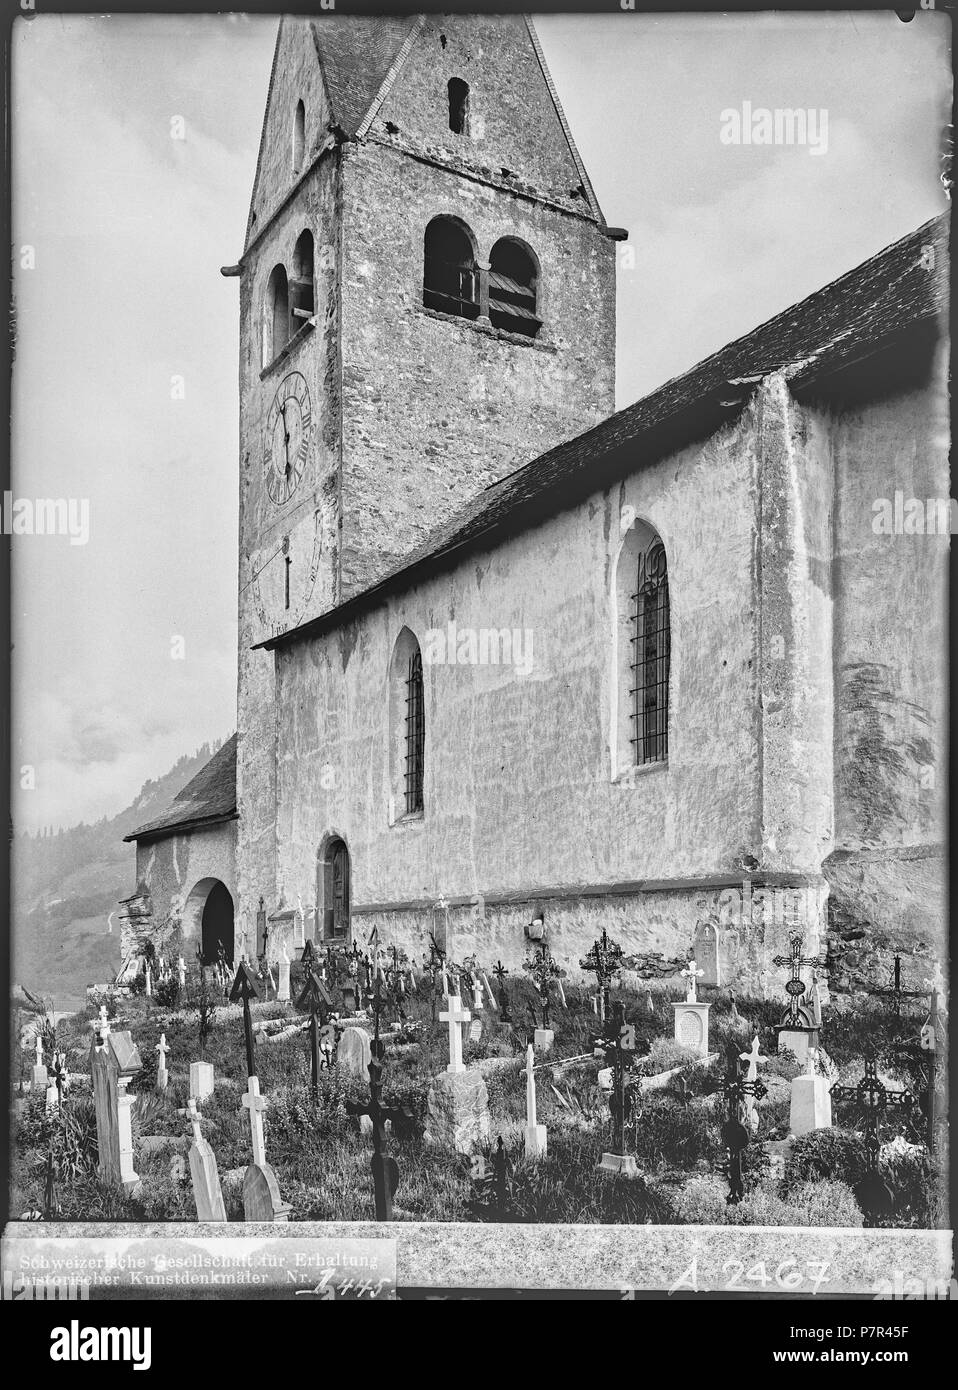 69 CH-NB - Disentis, Kirche St. Johannes Baptist, vue partielle extérieure - Collection Max van Berchem - EAD-7032 Stock Photo